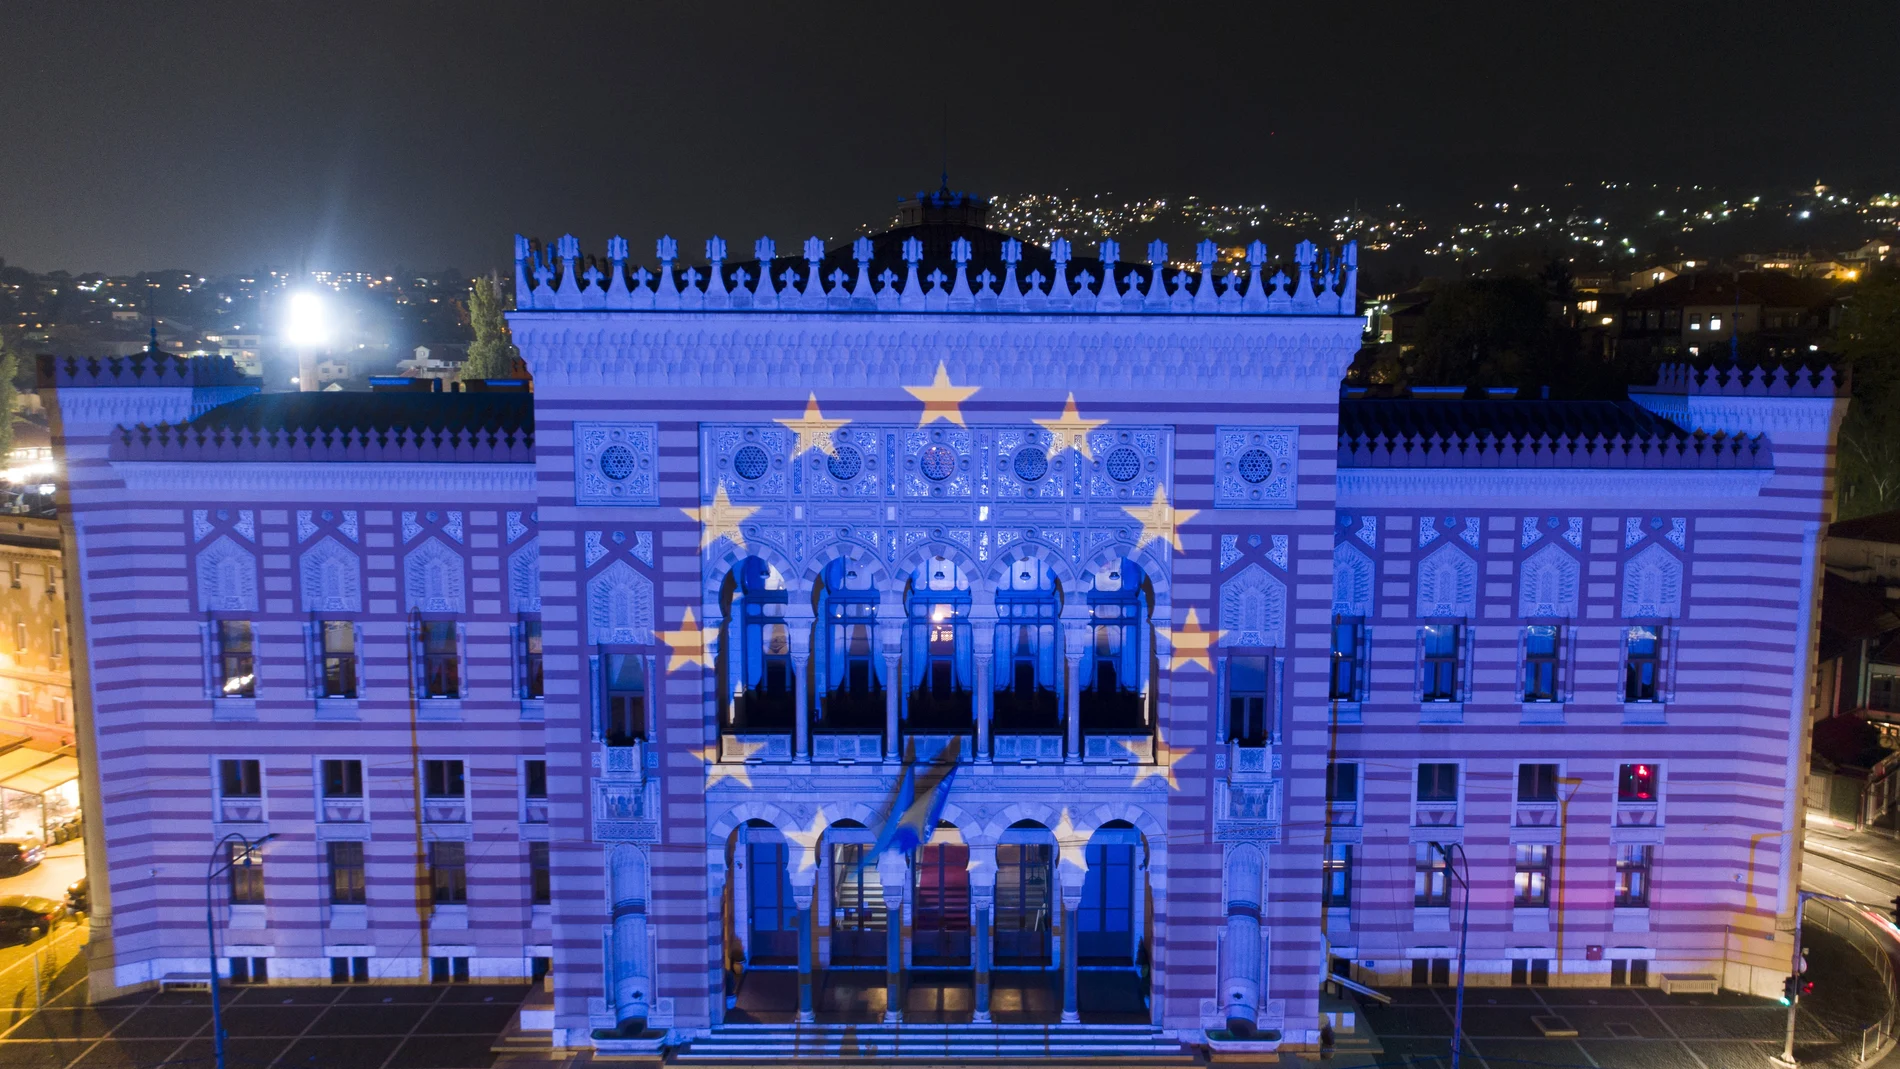 La bandera de la Unión Europea se proyecta sobre el edificio de la Biblioteca Nacional en Sarajevo